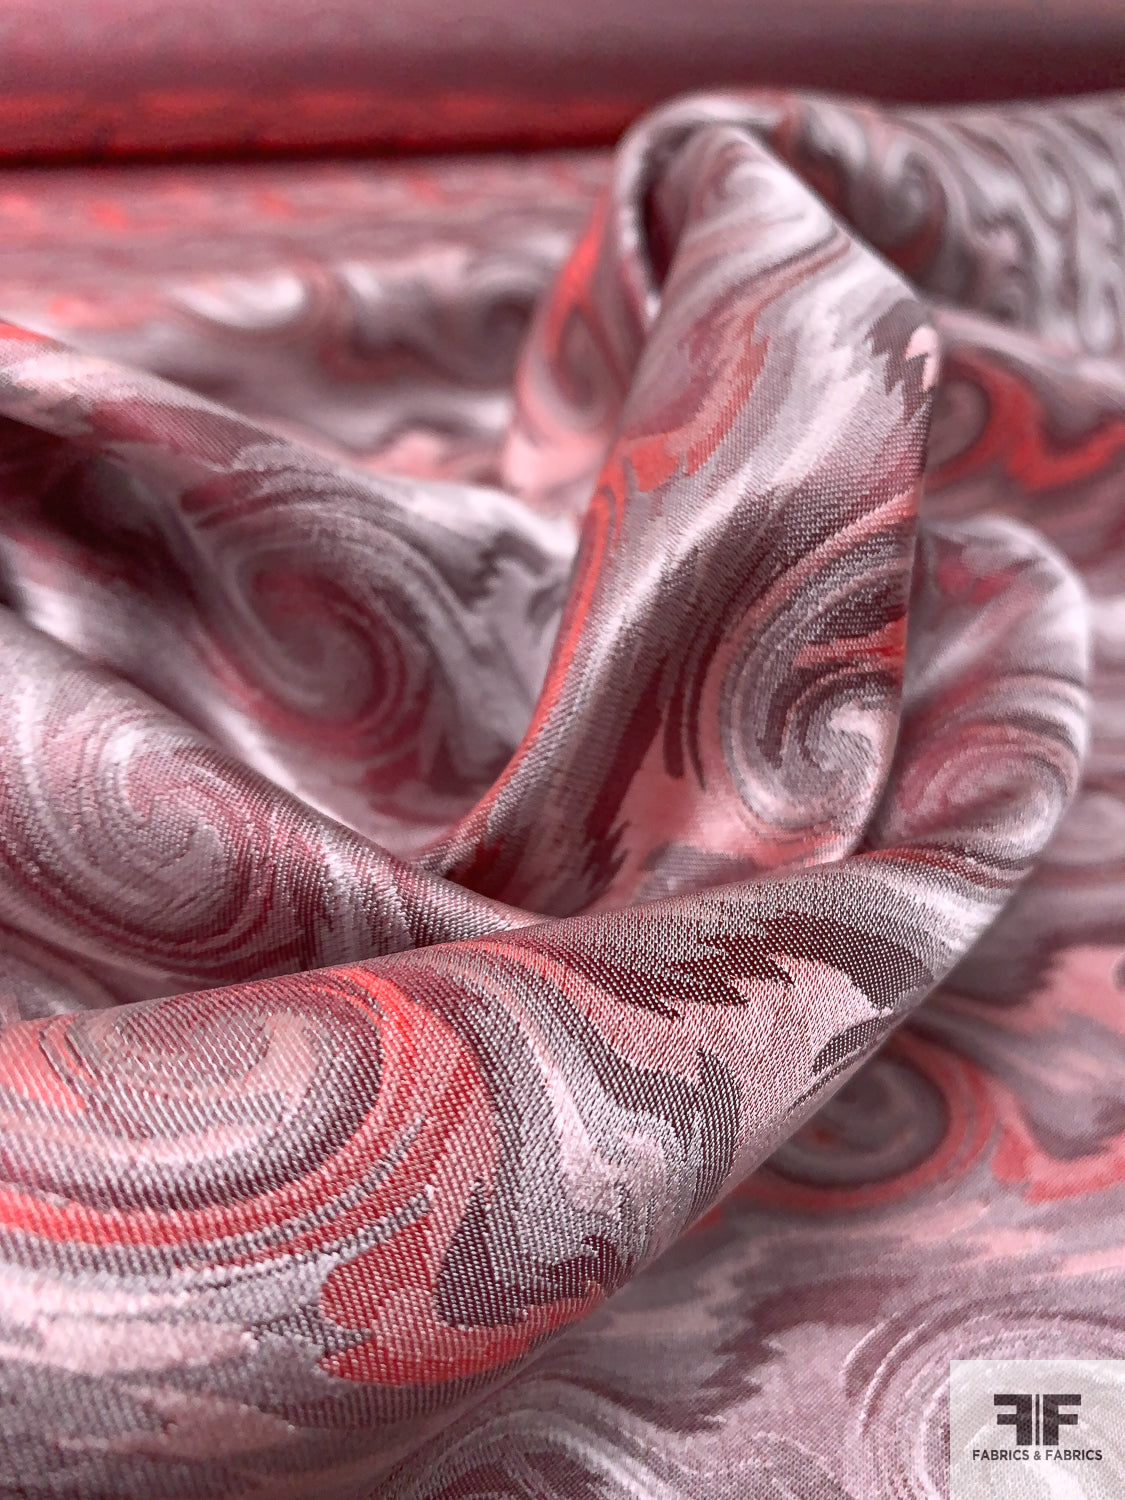 Wave Design Silk Necktie Jacquard Brocade - Strawberry Red / Grey